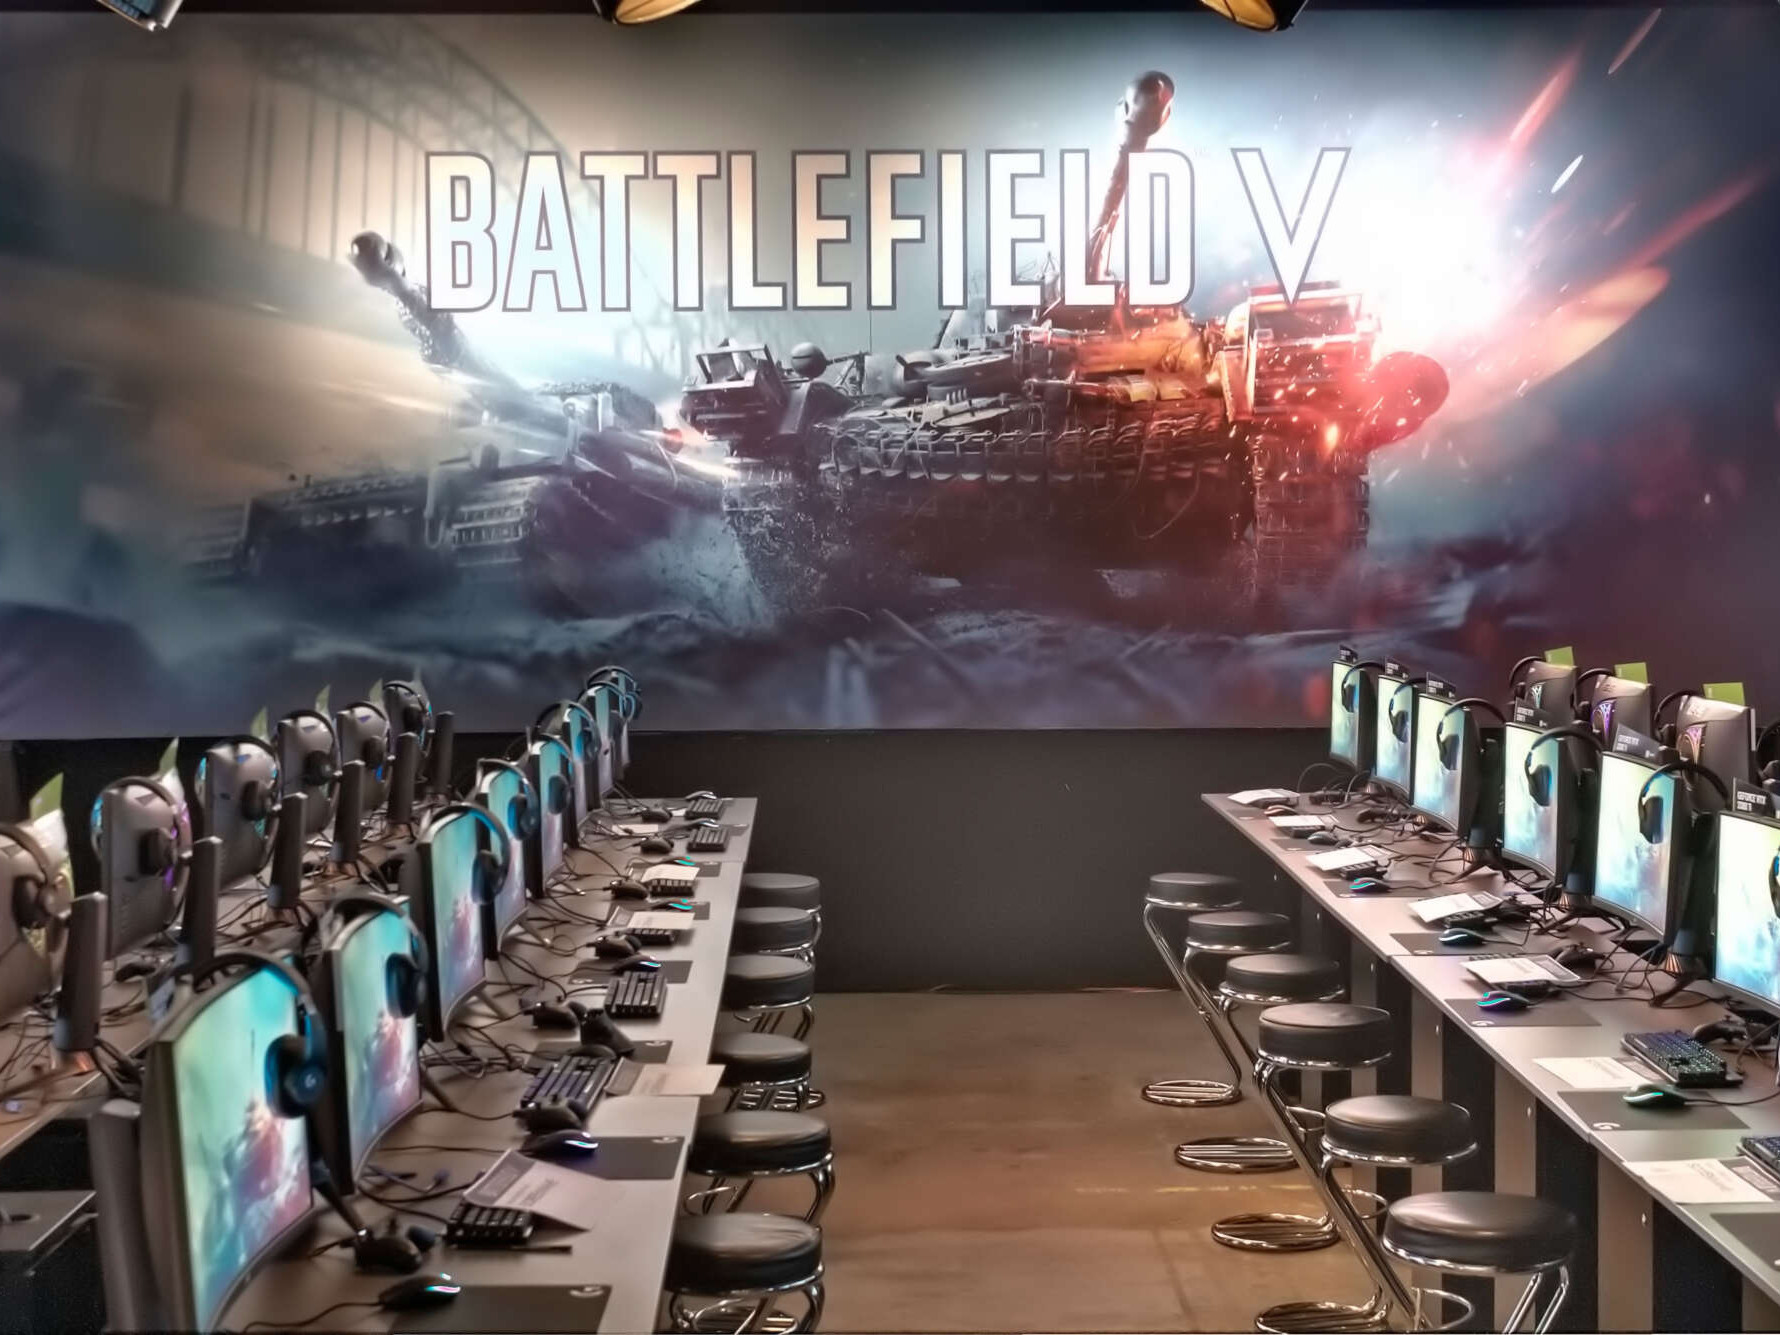 Hinter aufgereihten Gaming-PCs steht eine große Brandingwand, auf der zwei Panzer und ein Battlefield V Schriftzug zu sehen sind